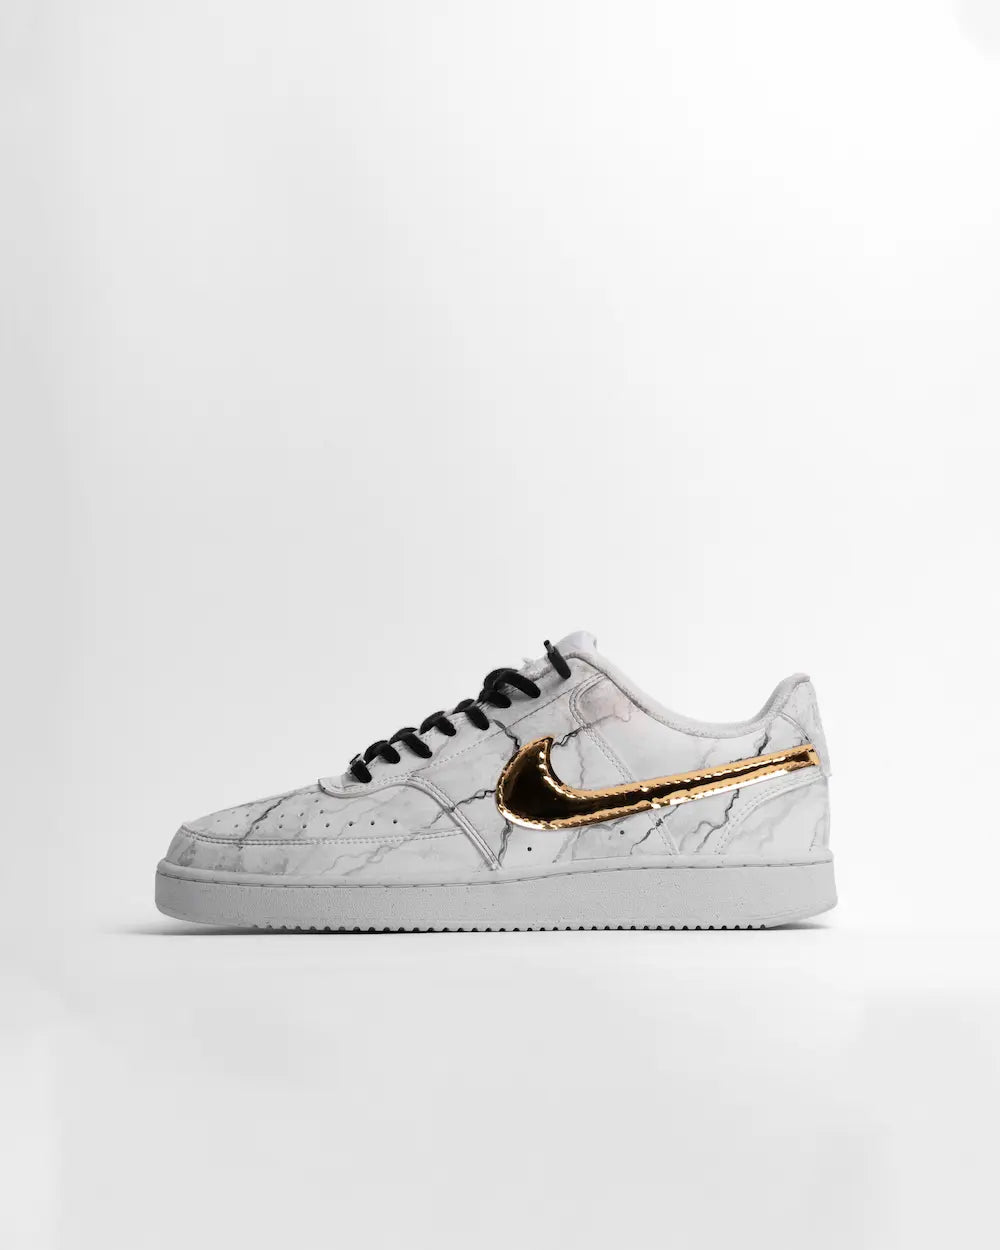 Nike Court Vision sneaker custom effetto marmo dipinto a mano, con tessuto metallizzato oro su Swoosh